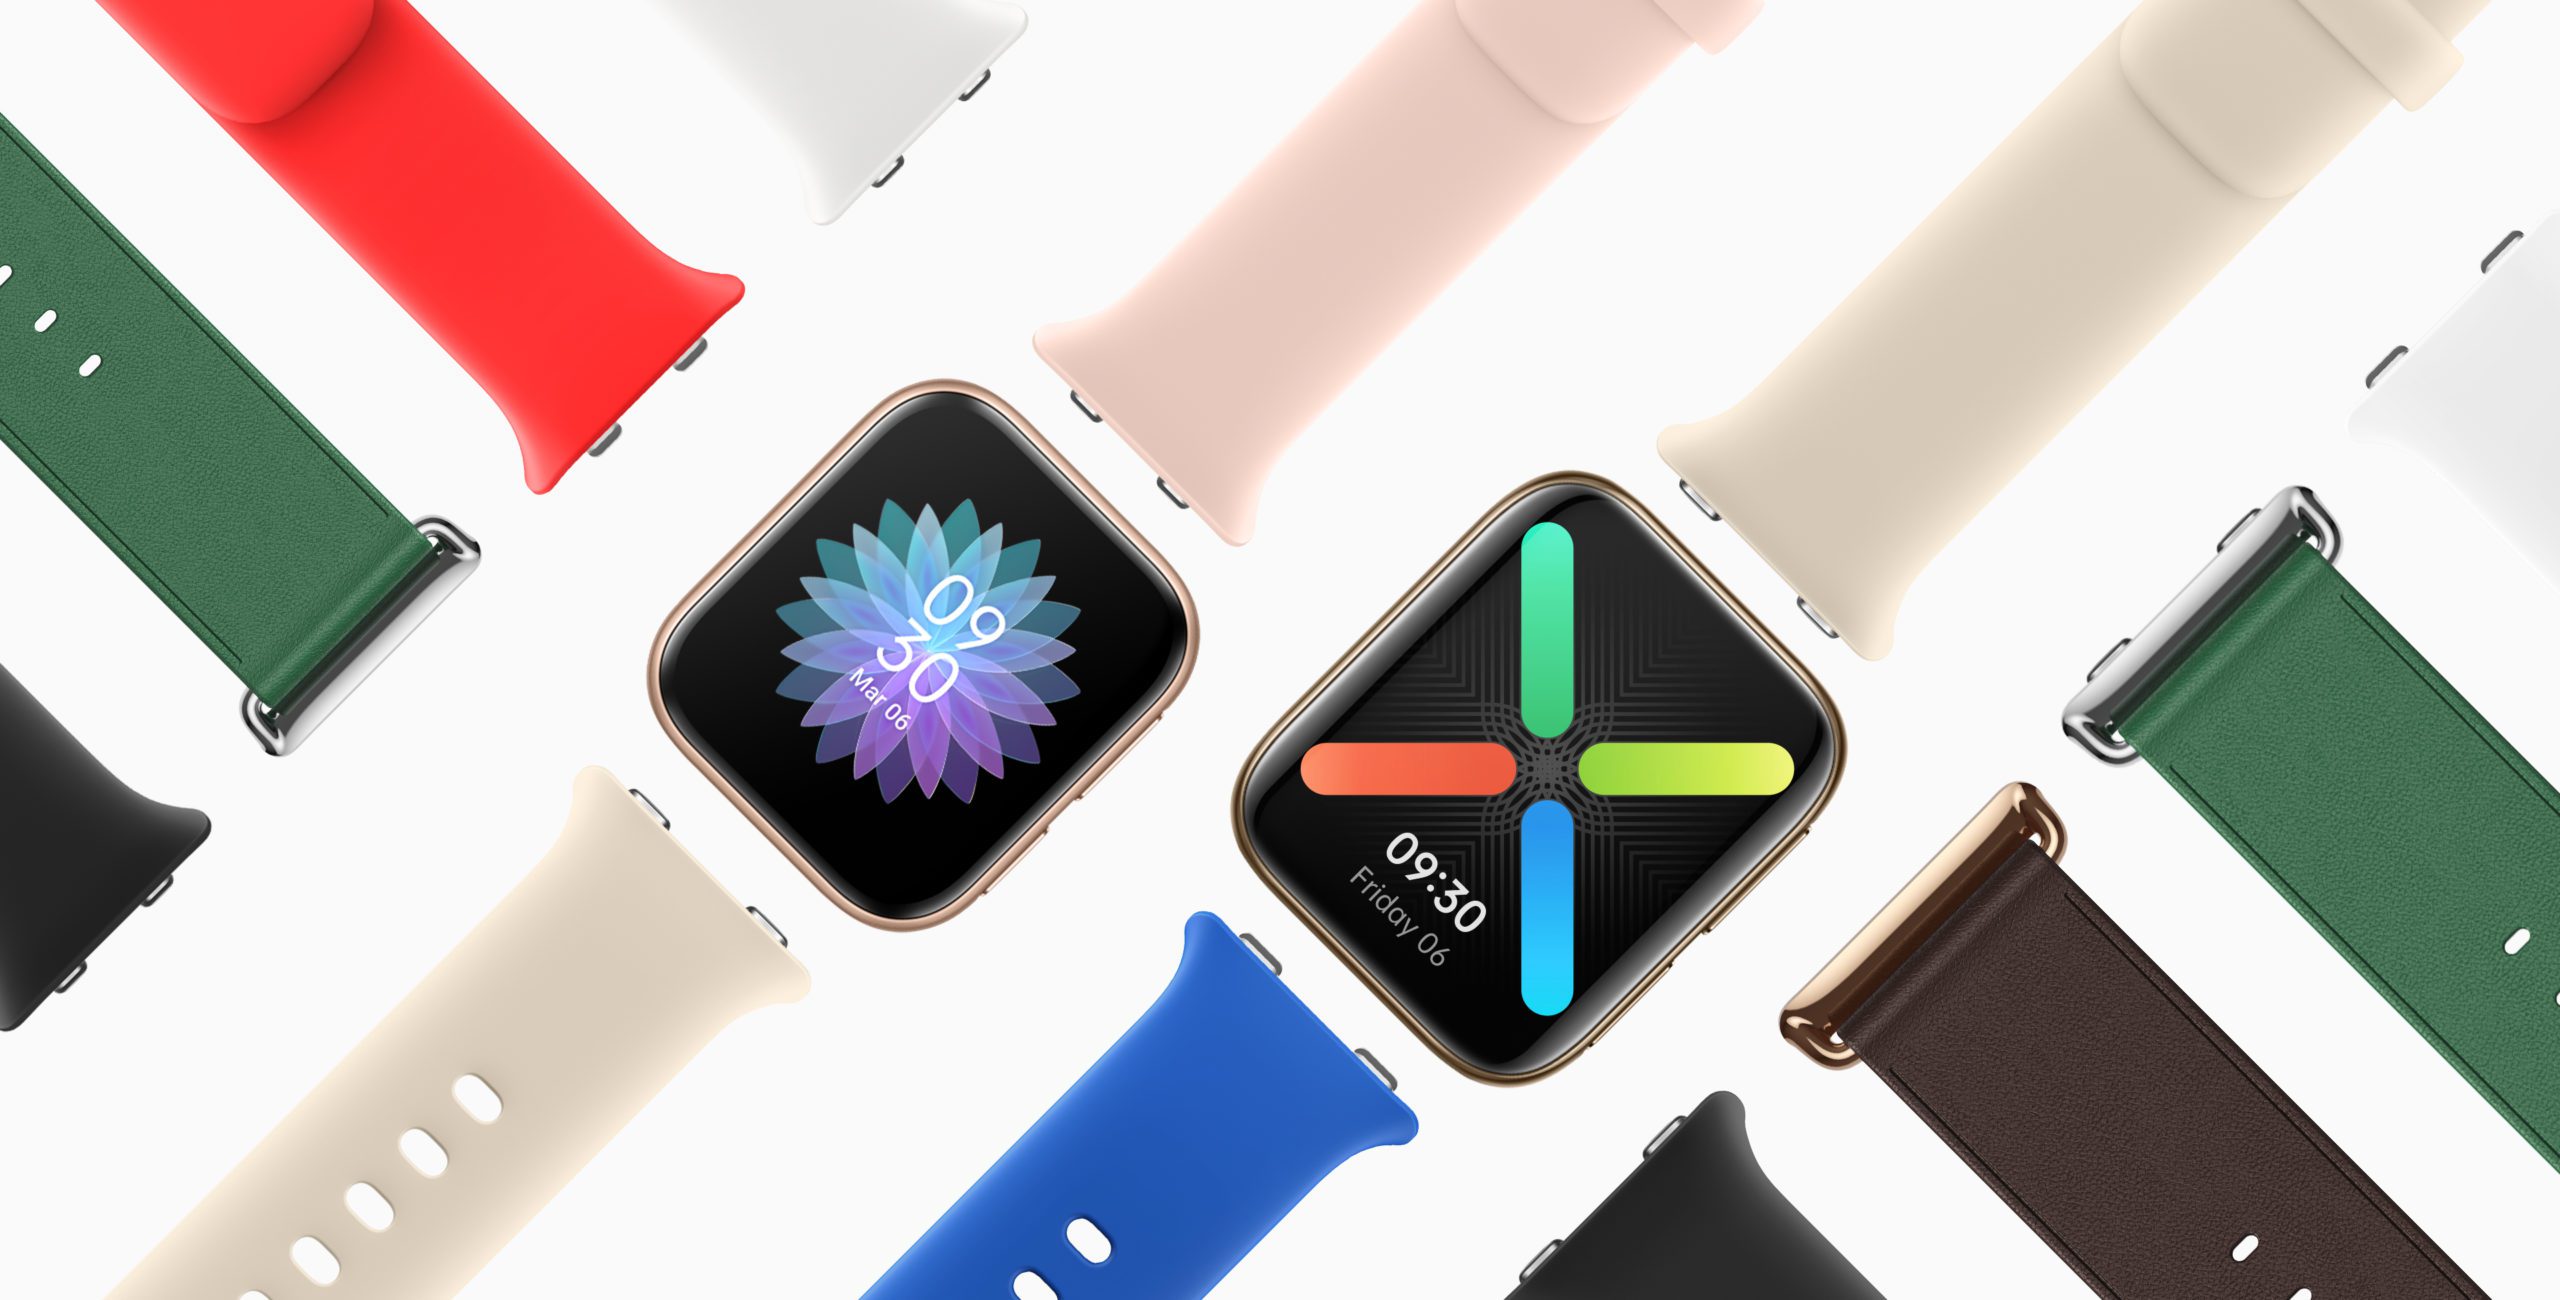 Wir könnten endlich das Wear OS bekommen Apple Watch Klon, den wir wirklich verdienen 340